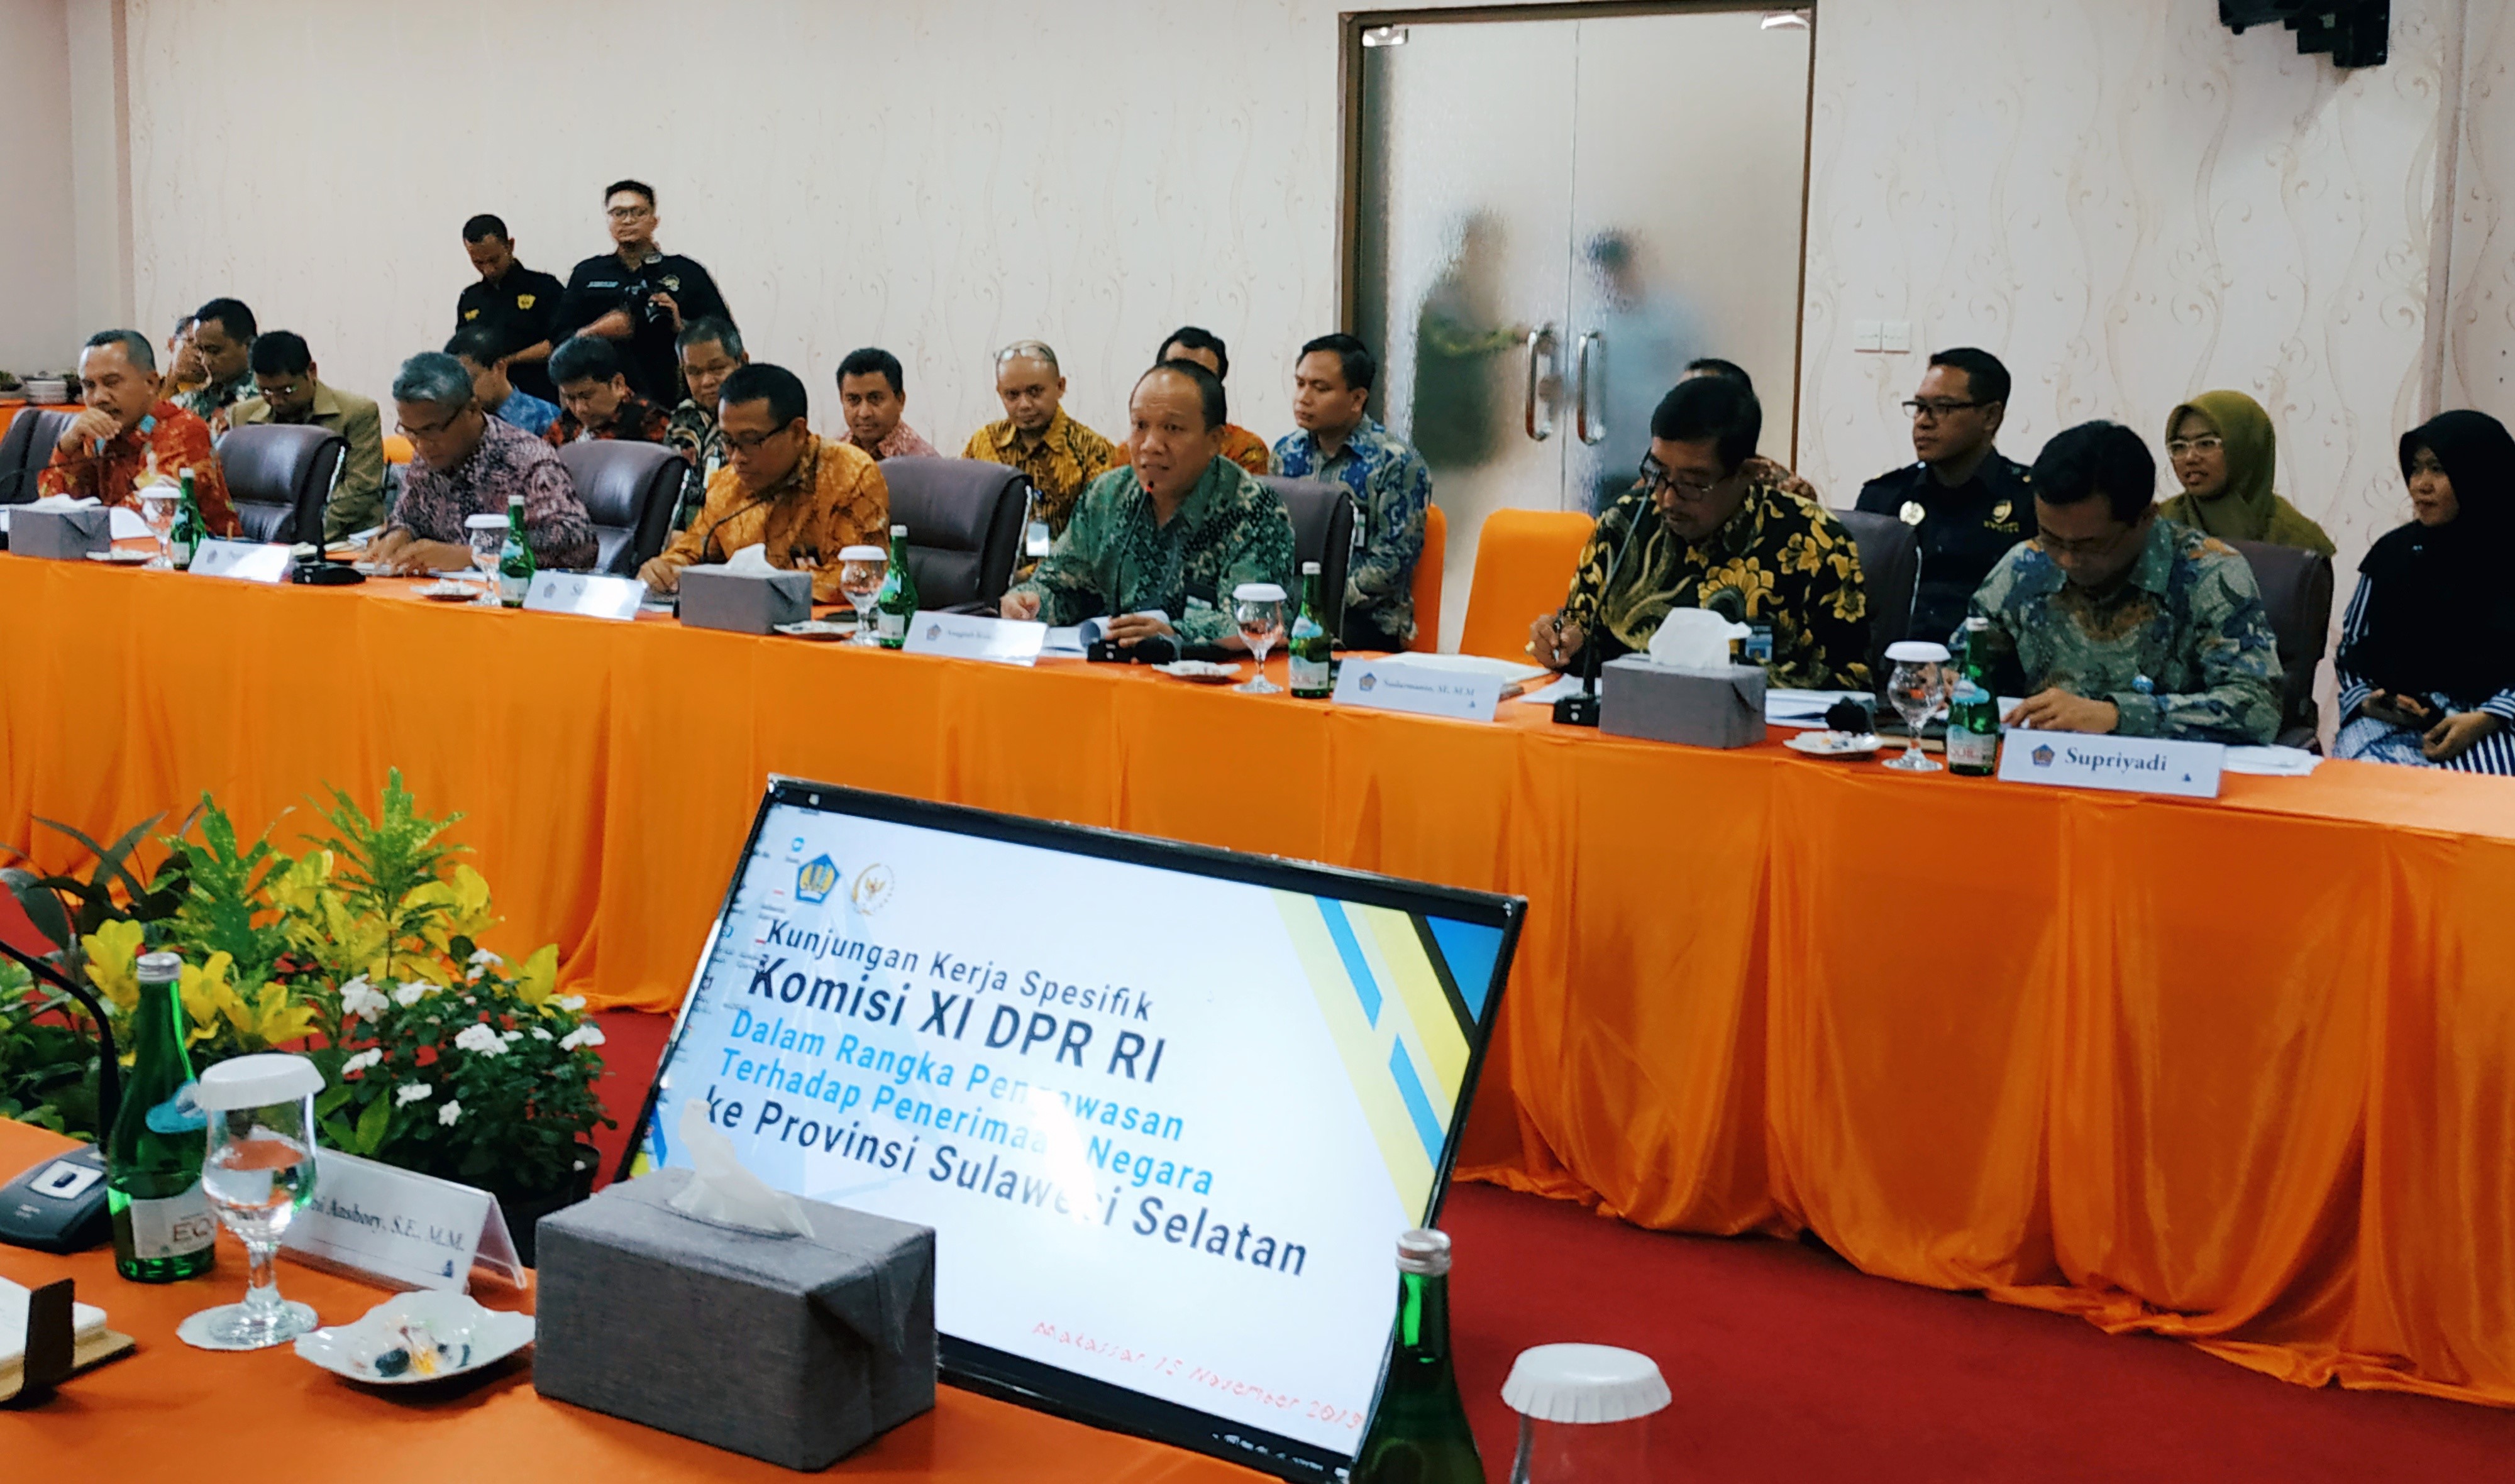 Penerimaan Negara dari Sulawesi Selatan Menjadi Perhatian Komisi XI DPR RI